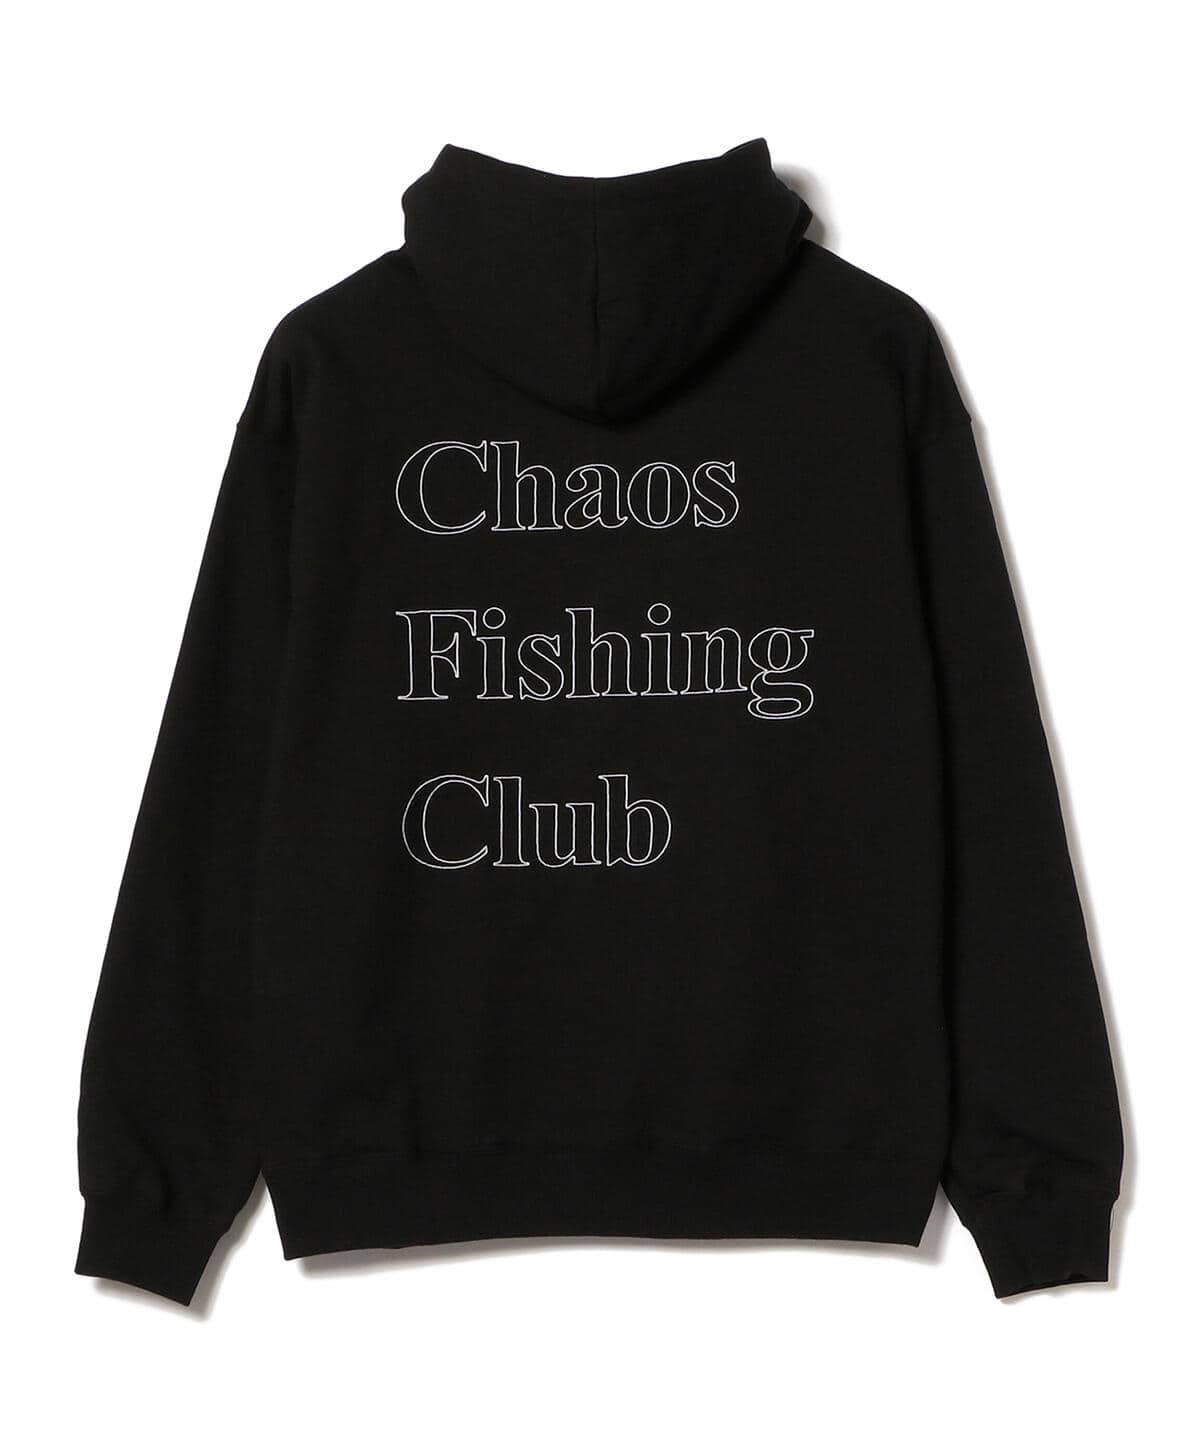 Chaos Fishing Club OG LOGO HOODIE